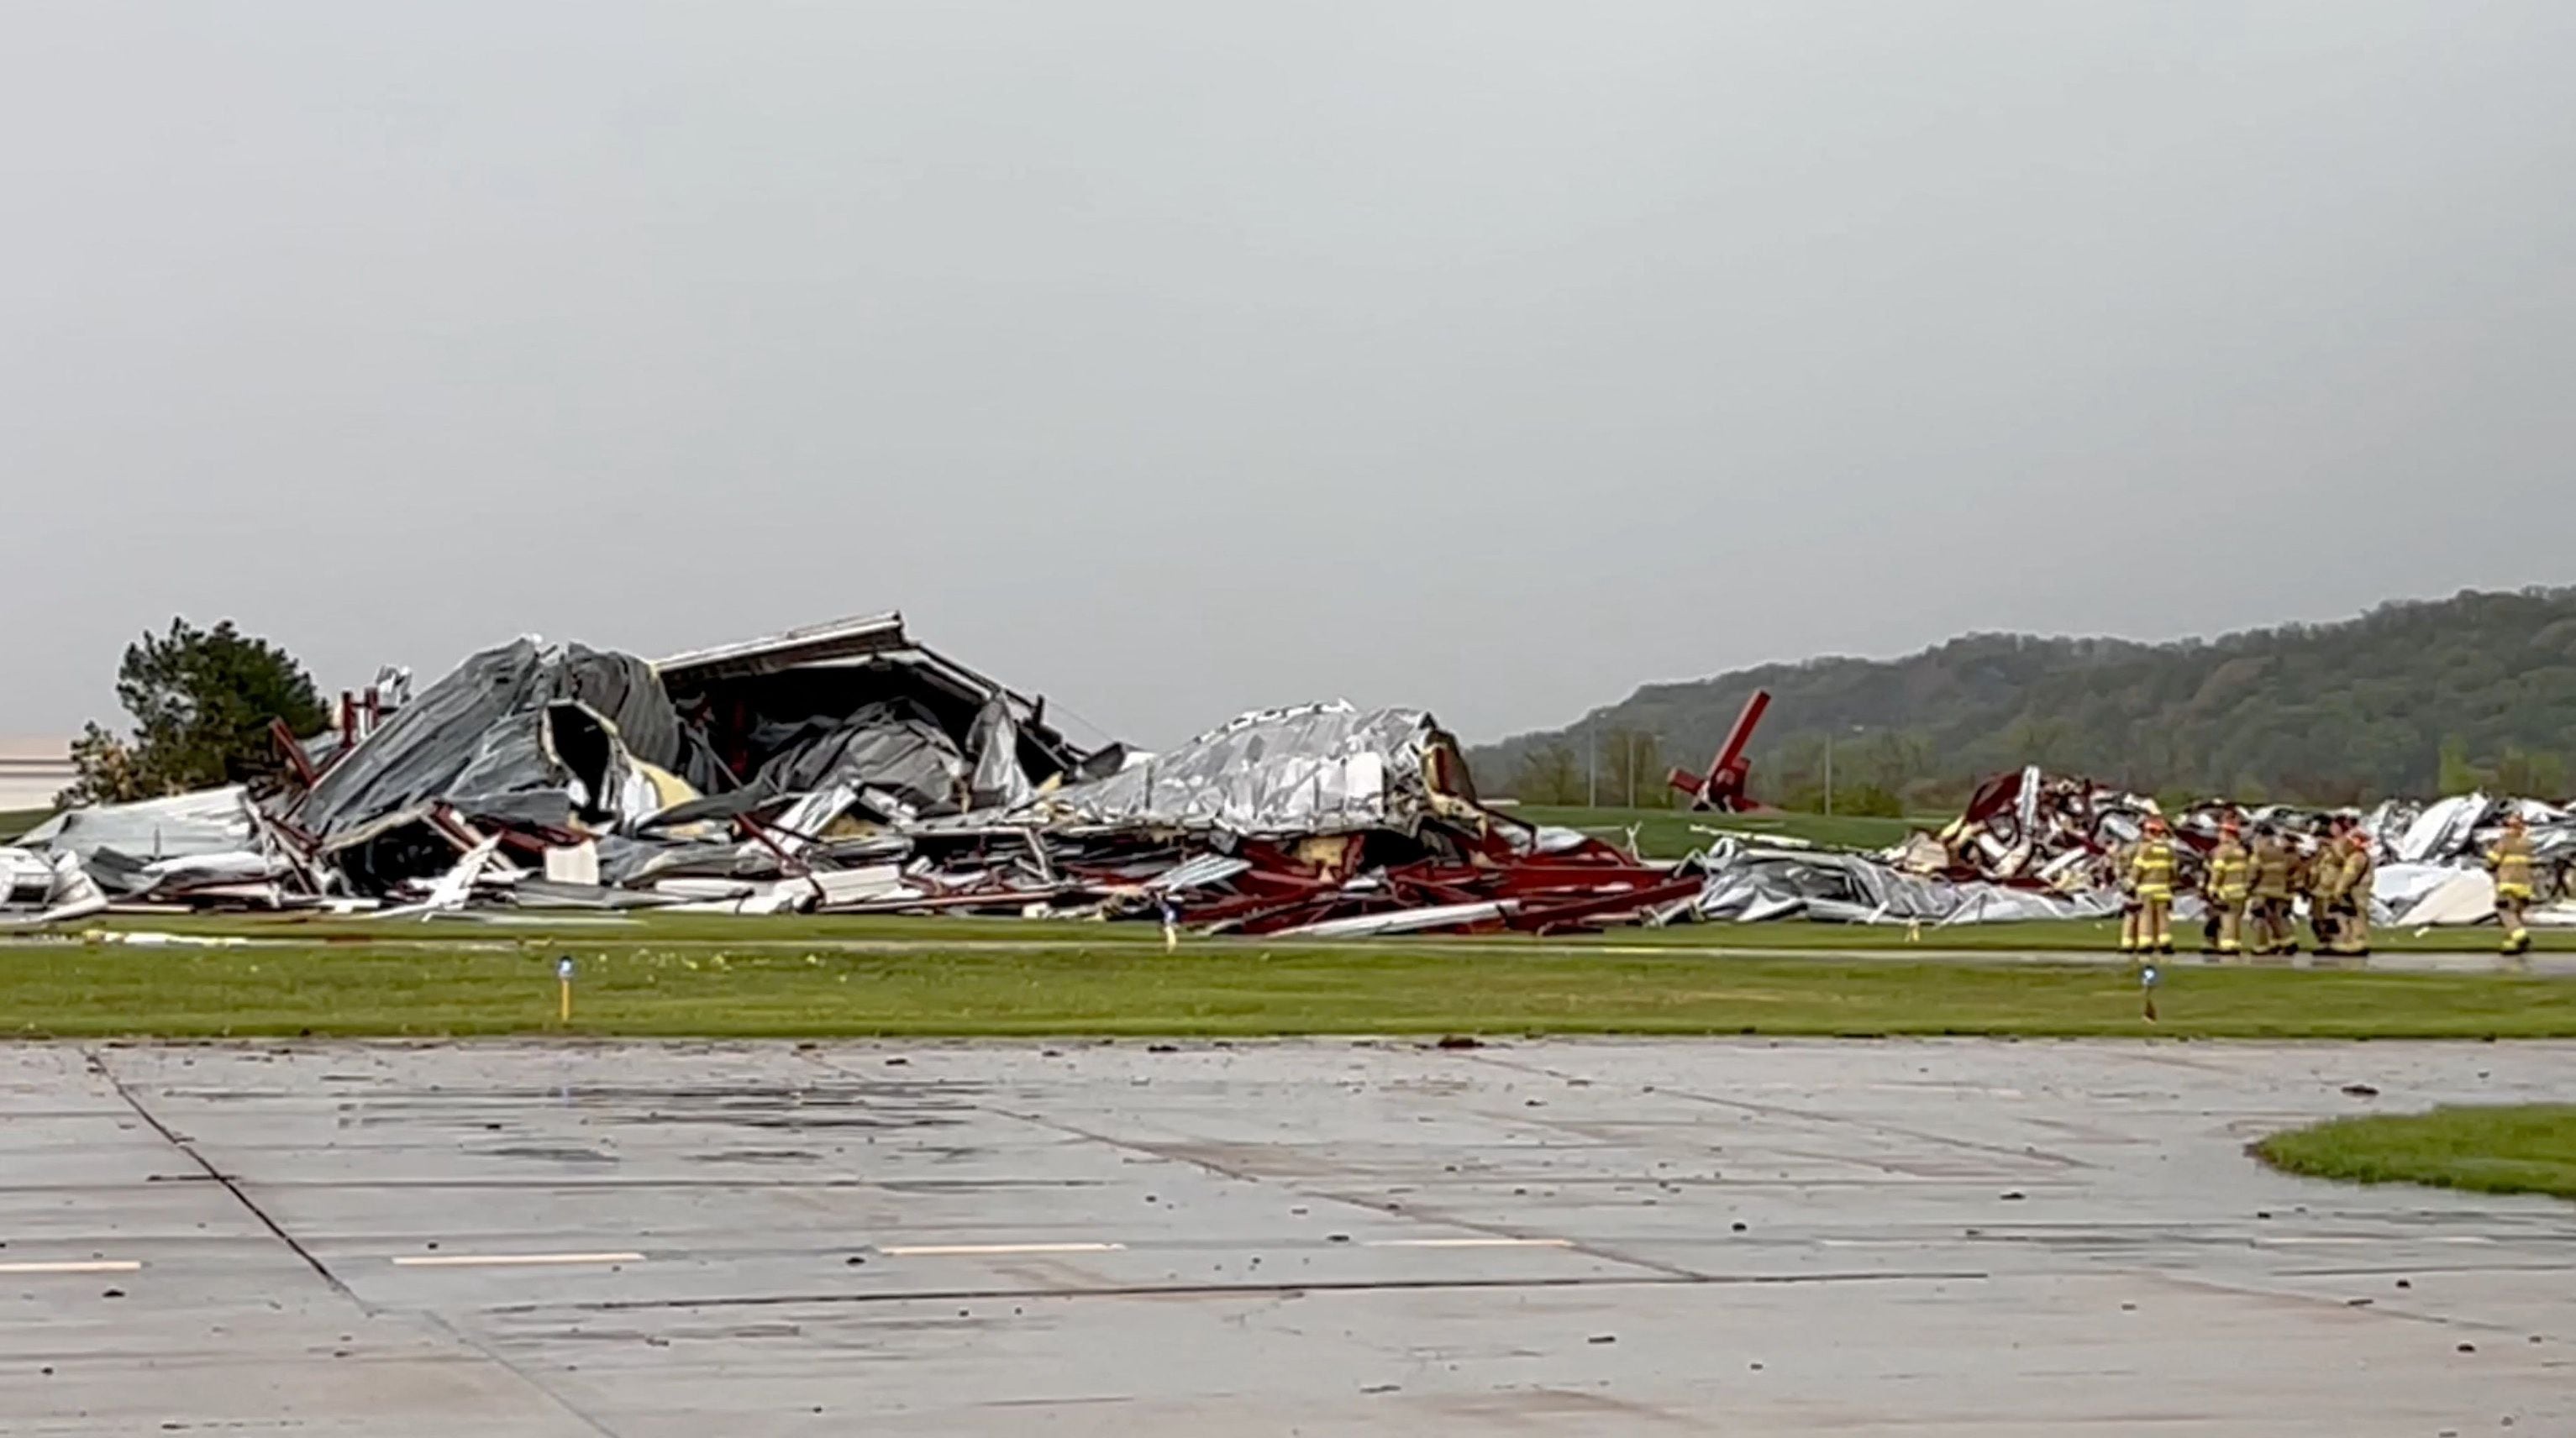 Daños causados por un tornado en el aeródromo de Eppley, en Omaha, Nebraska (REUTERS)